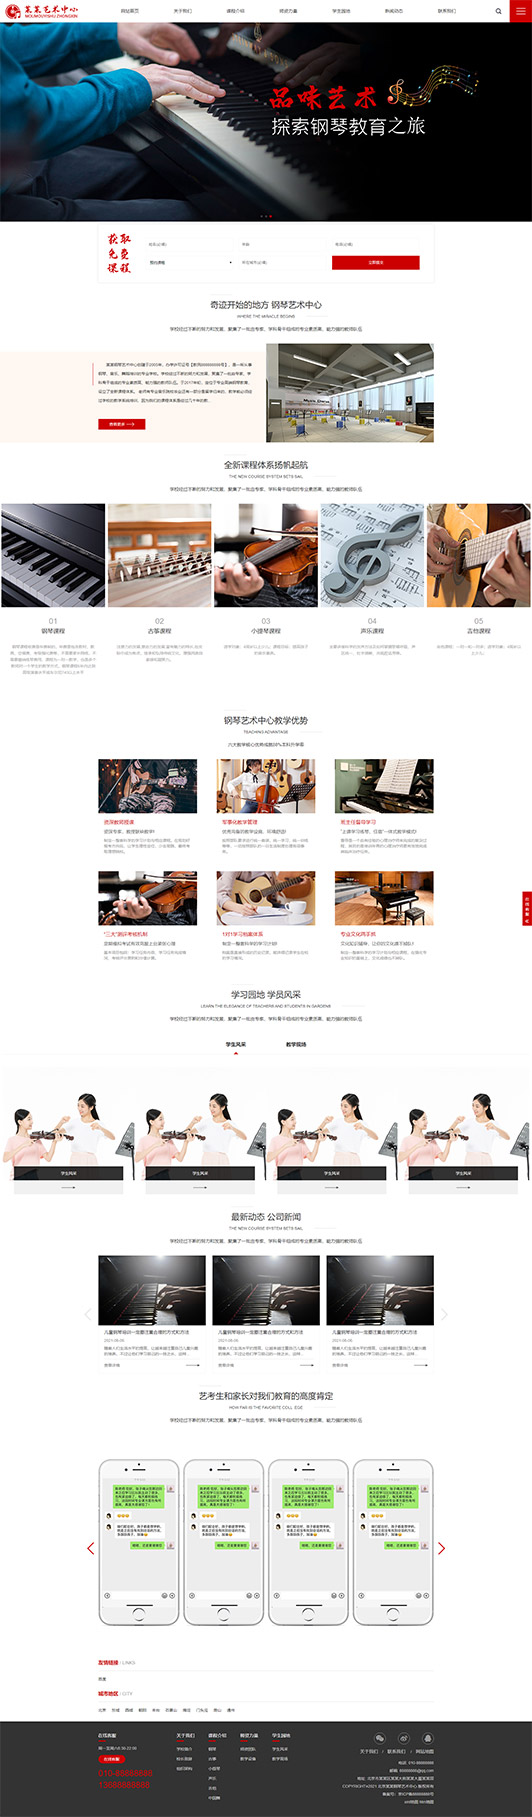 营口钢琴艺术培训公司响应式企业网站